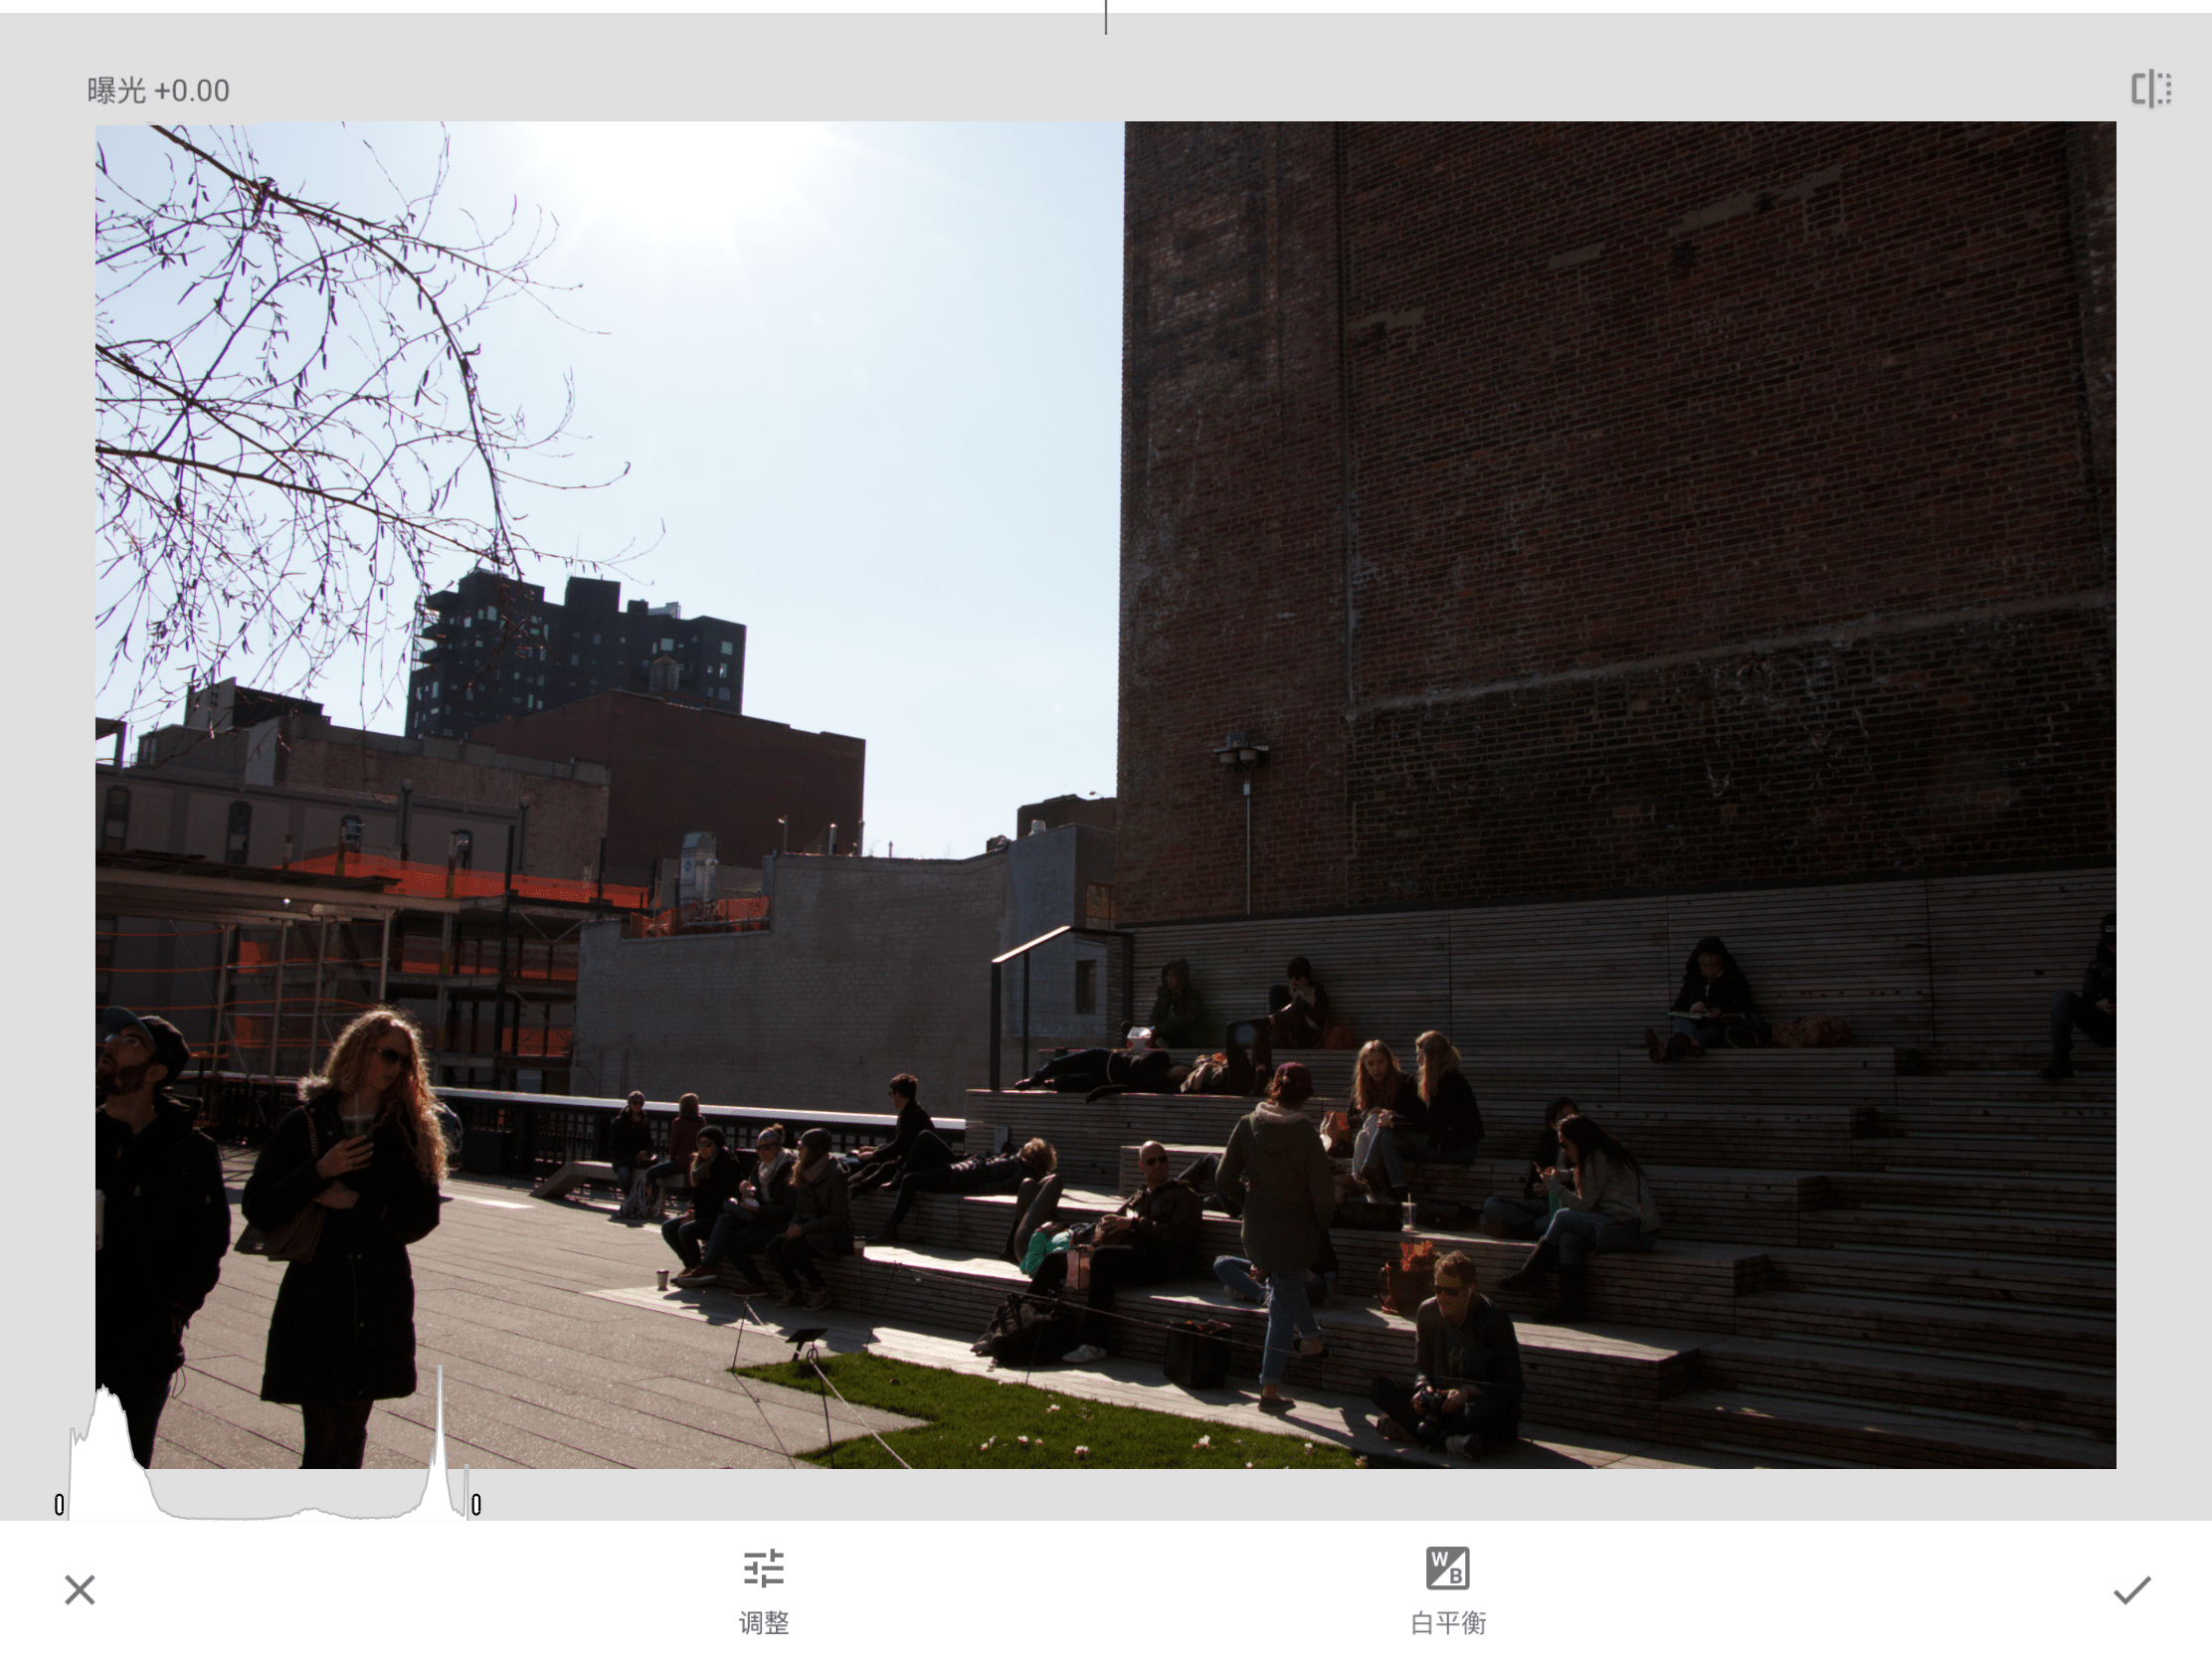 作为一位摄影爱好者，这是我在 iPad Pro 上处理照片的工作流